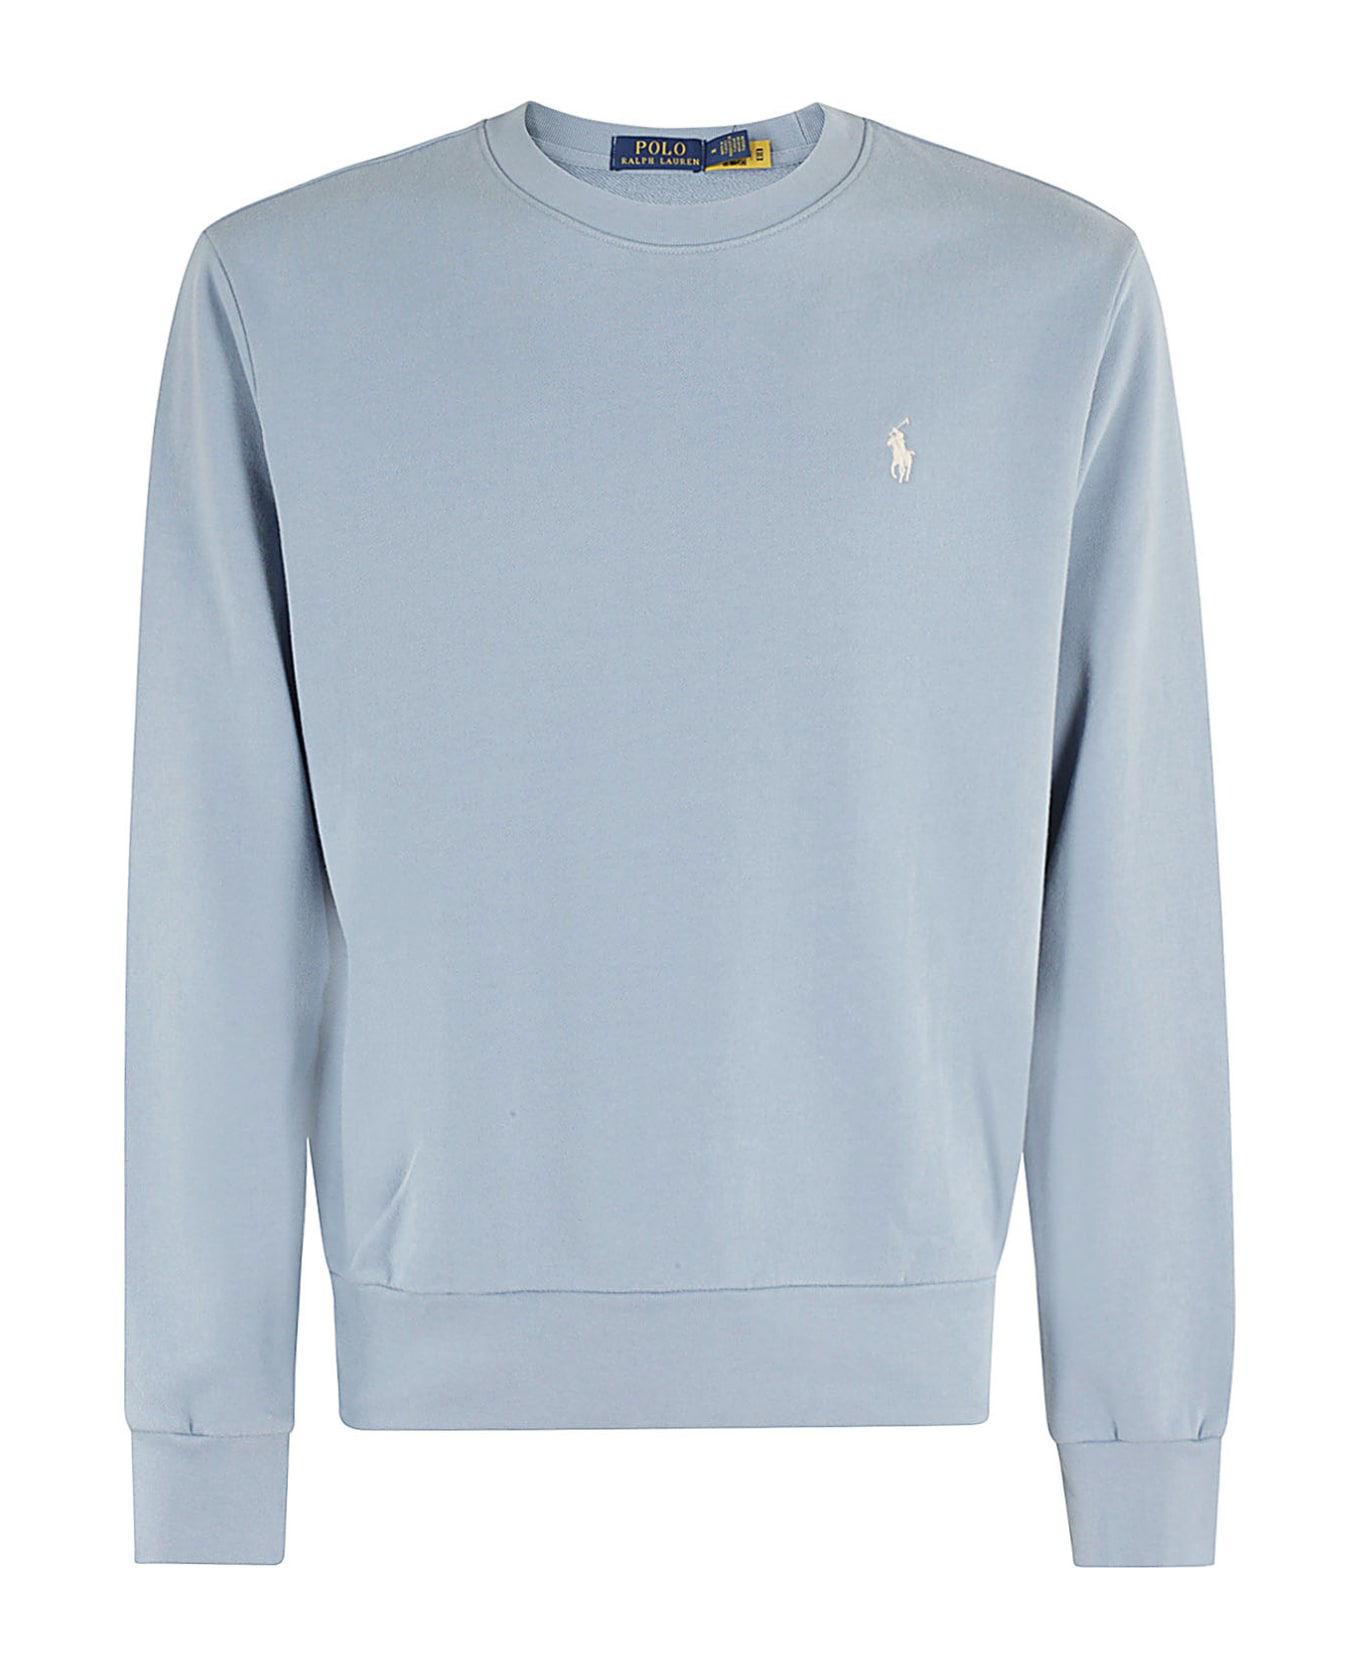 Polo Ralph Lauren Long Sleeve Sweatshirt - Channel Blue